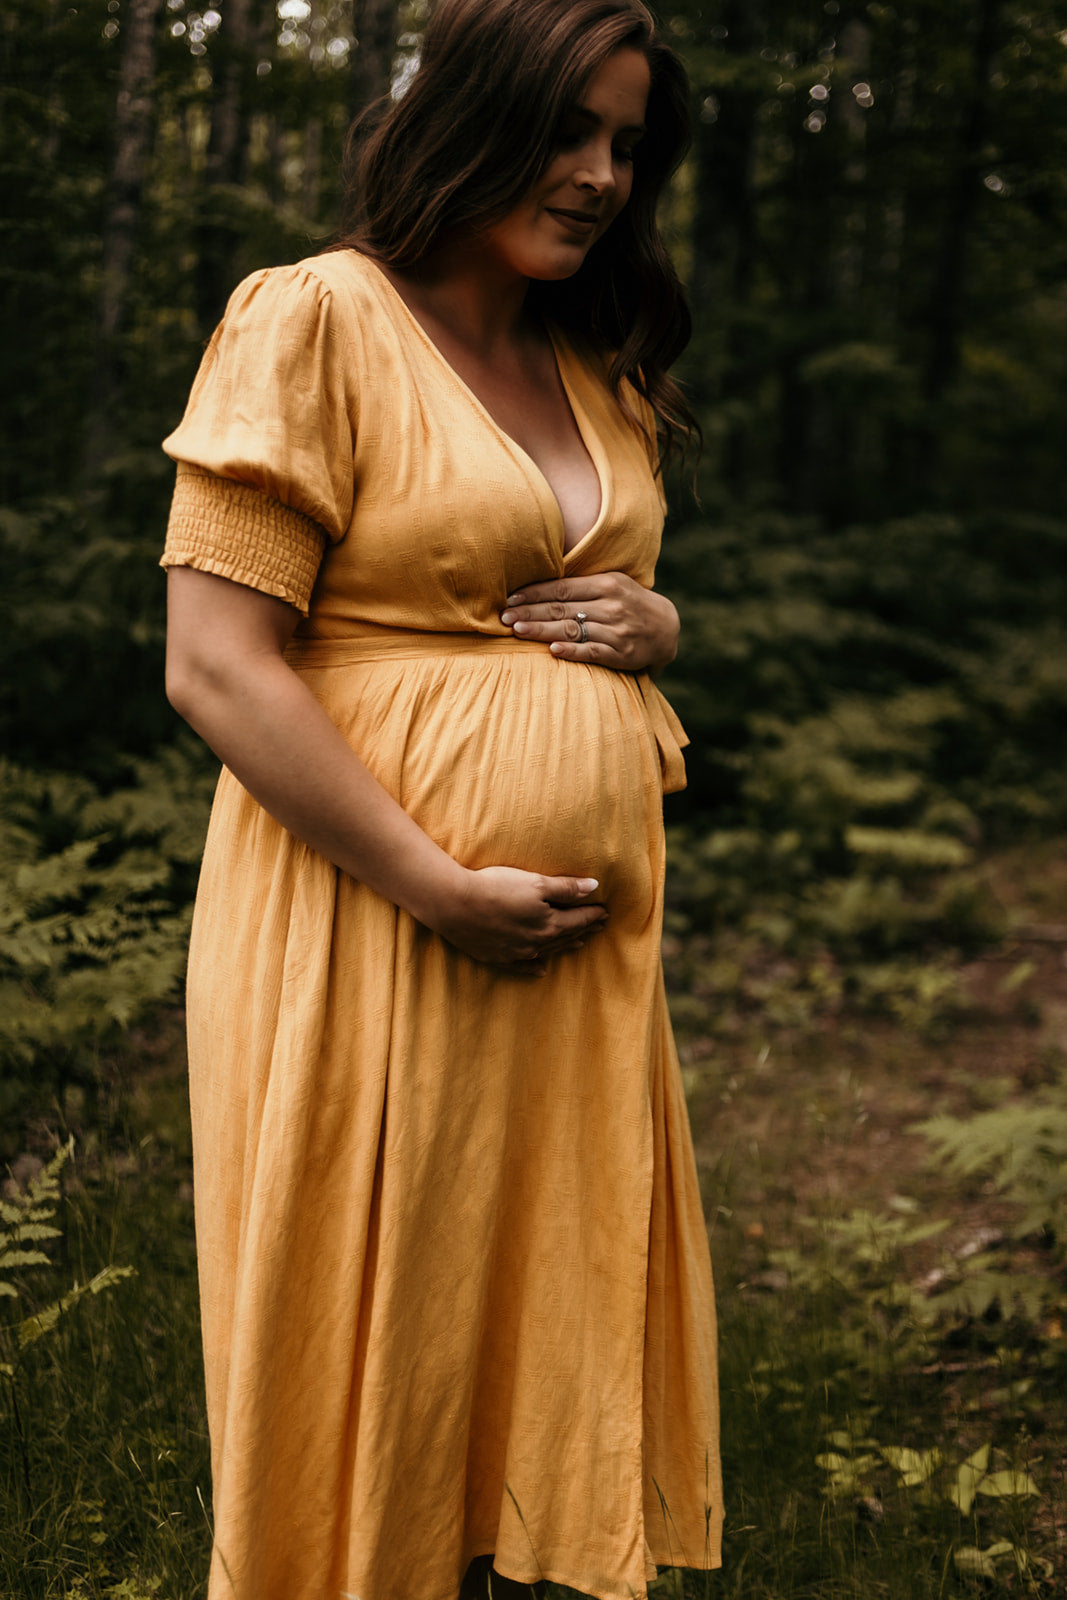 Maternity Lace Dress